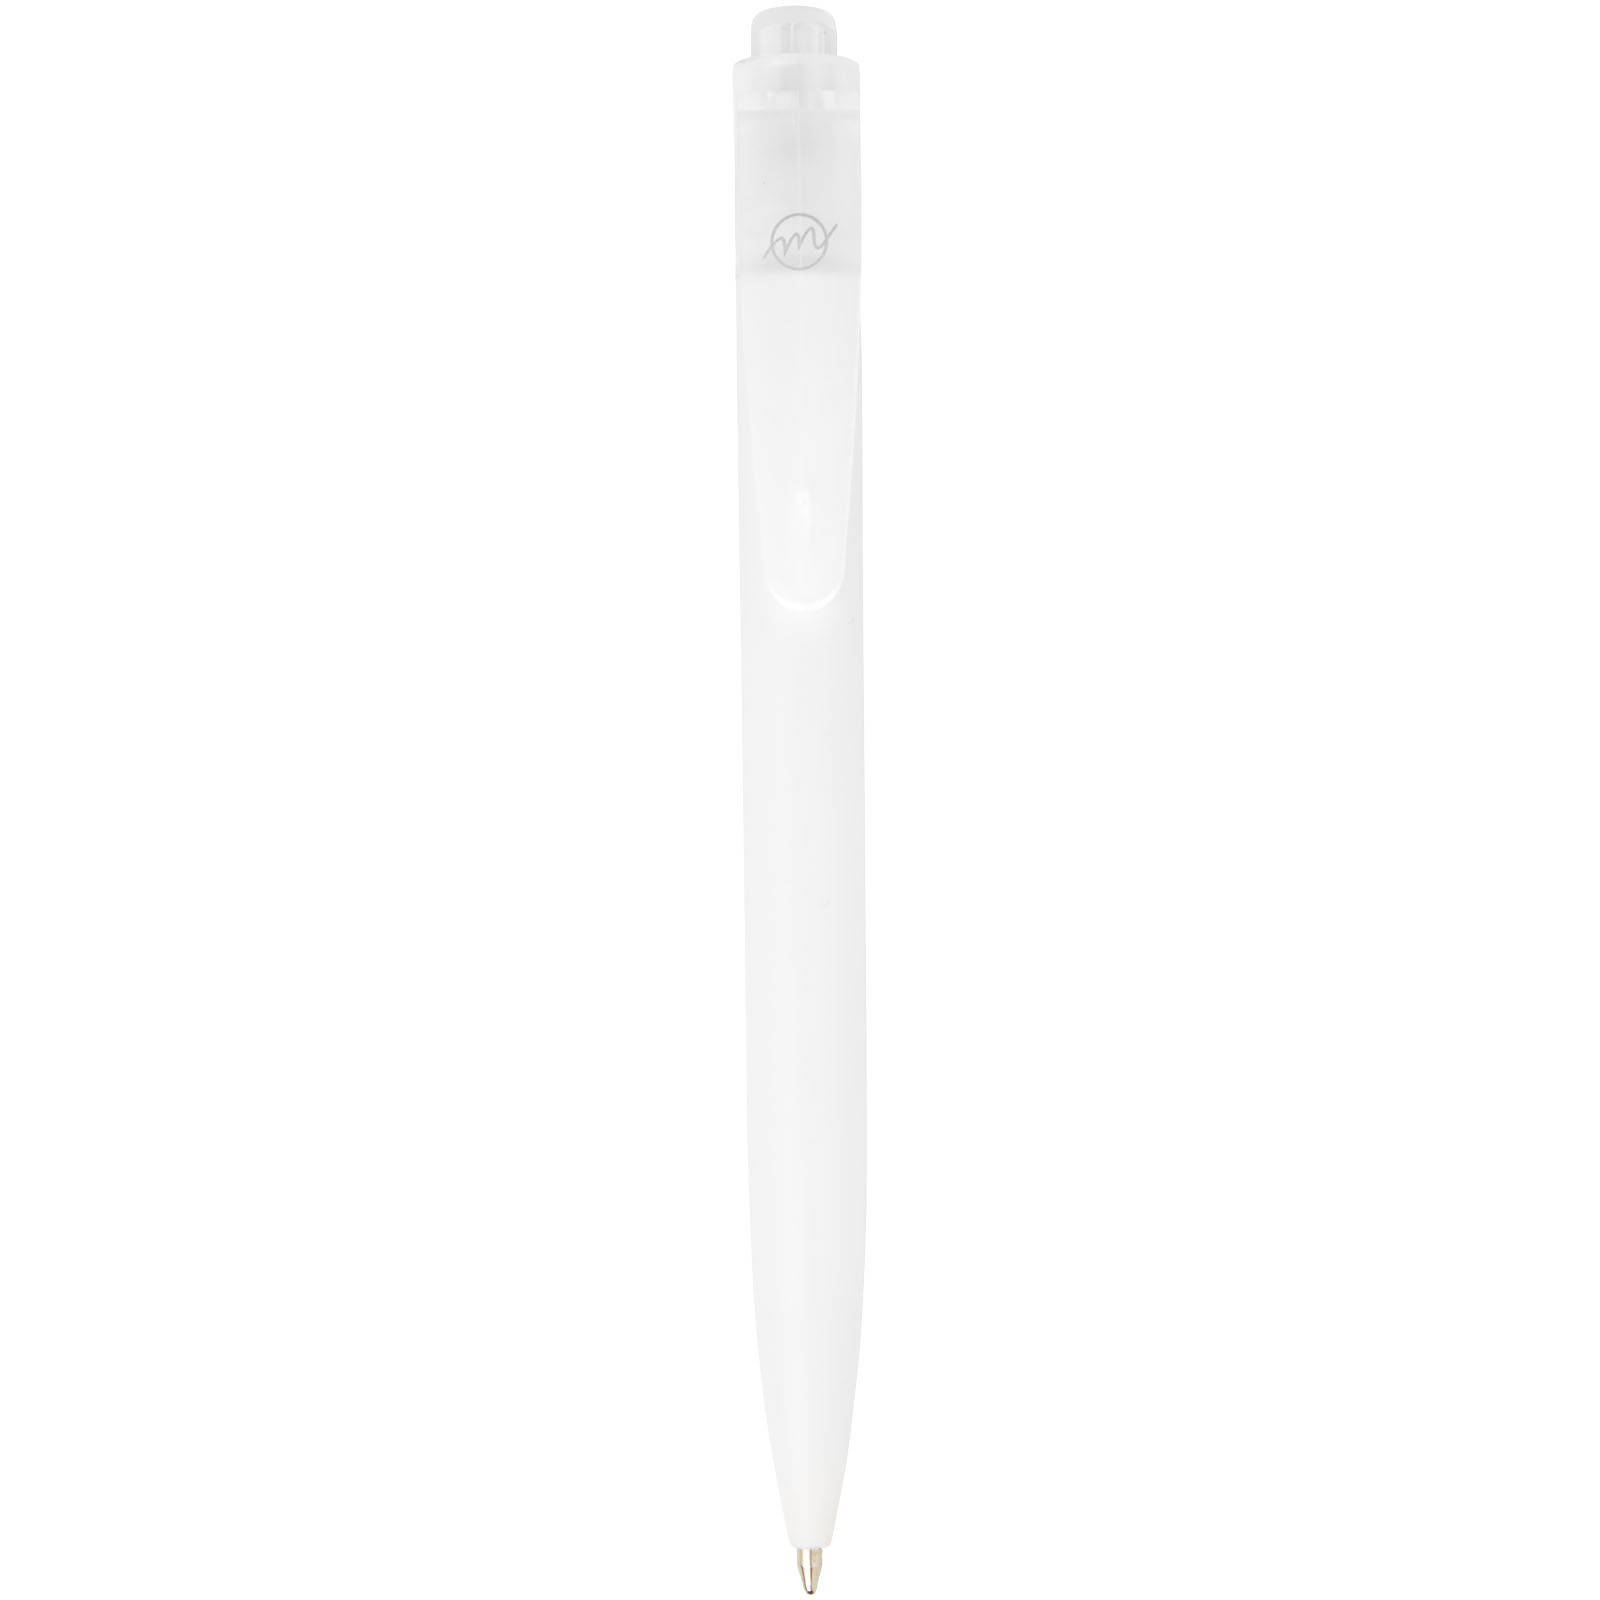 Ballpoint Pens - Thalaasa ocean-bound plastic ballpoint pen